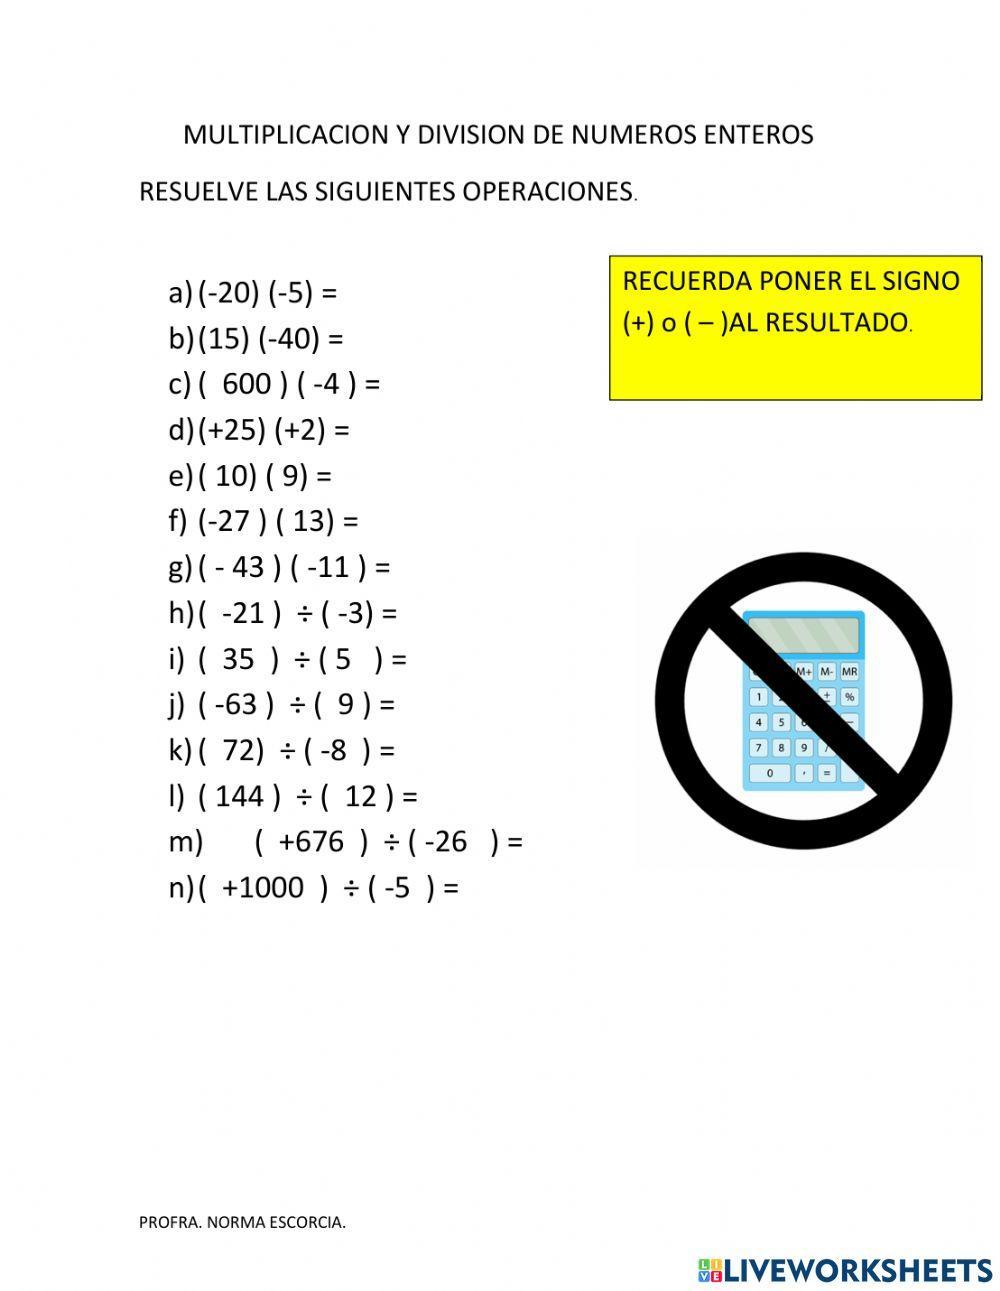 Multiplicación y división de números enteros